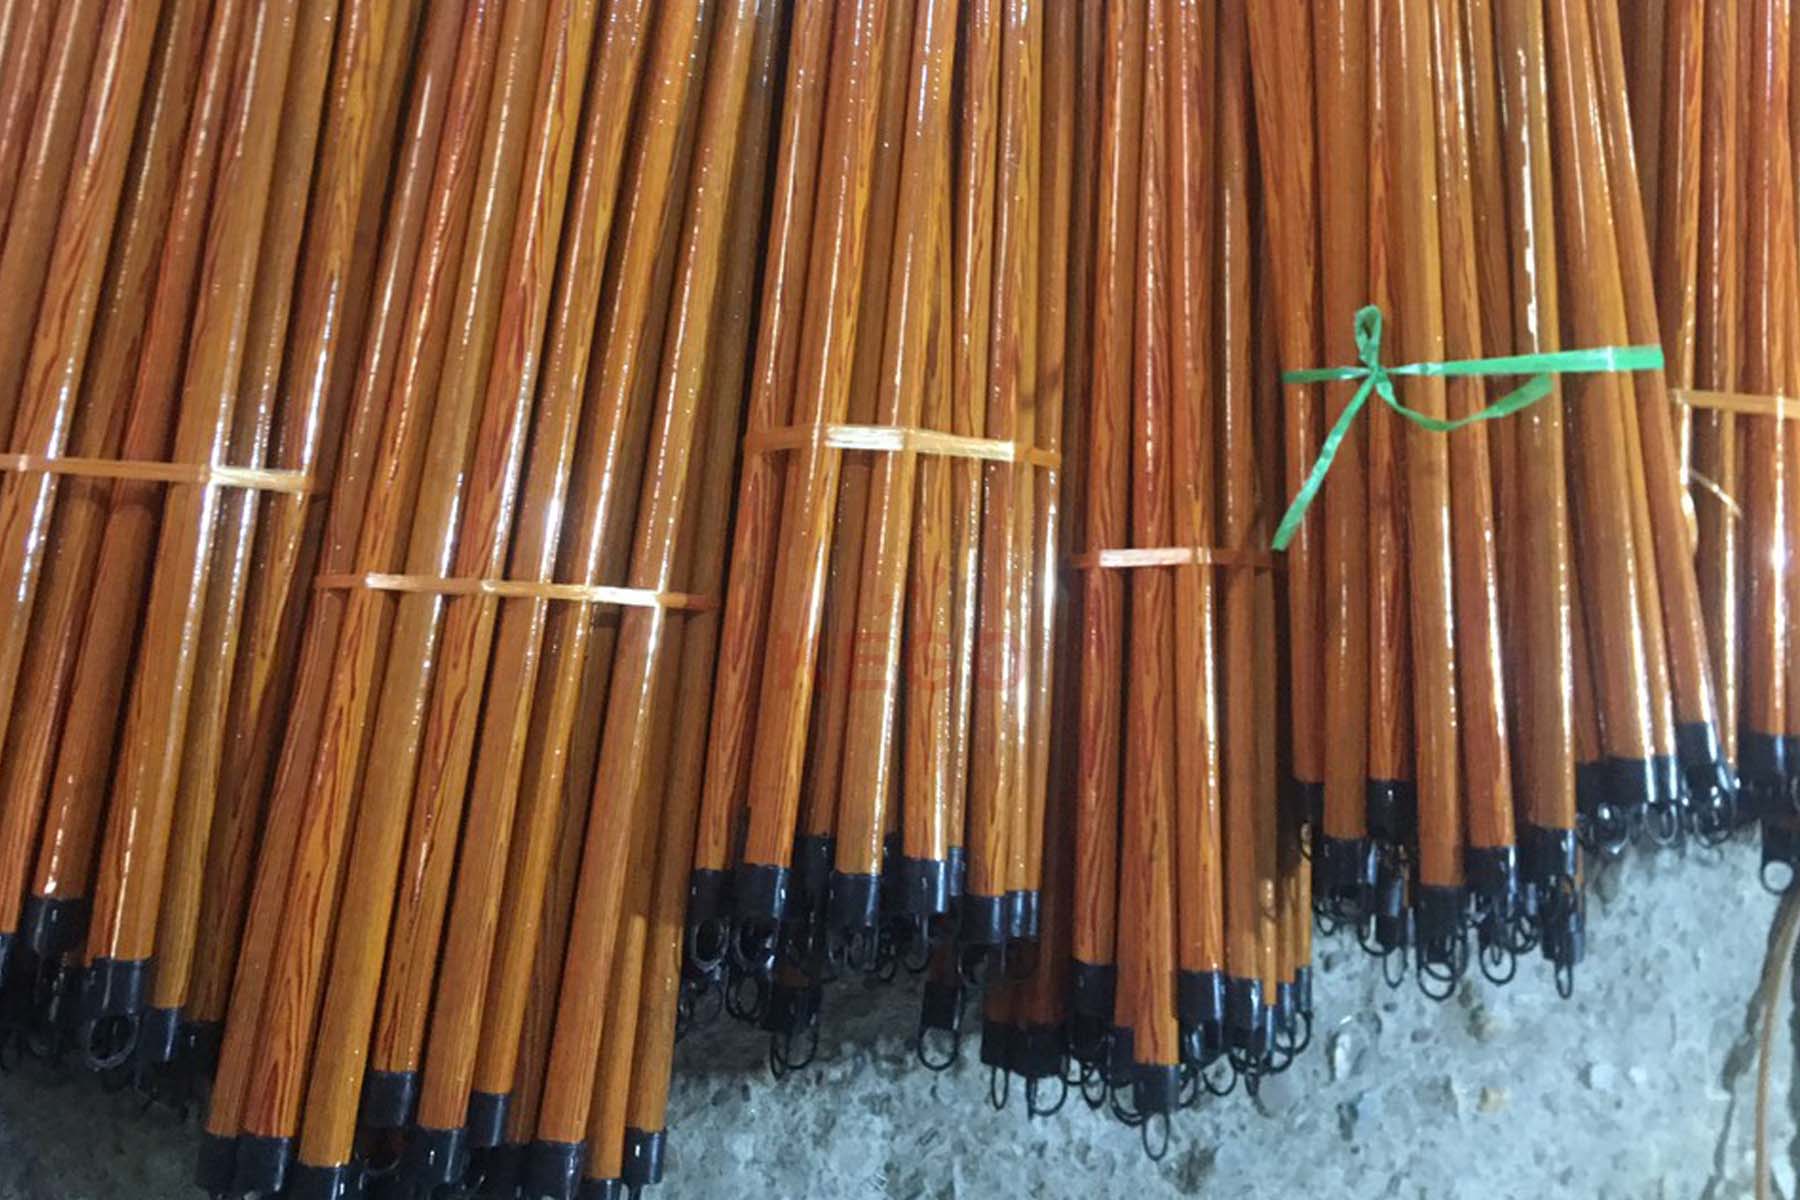 https://kego.com.vn/wp-content/uploads/2015/09/wooden-broom-handle-kego-10.jpg